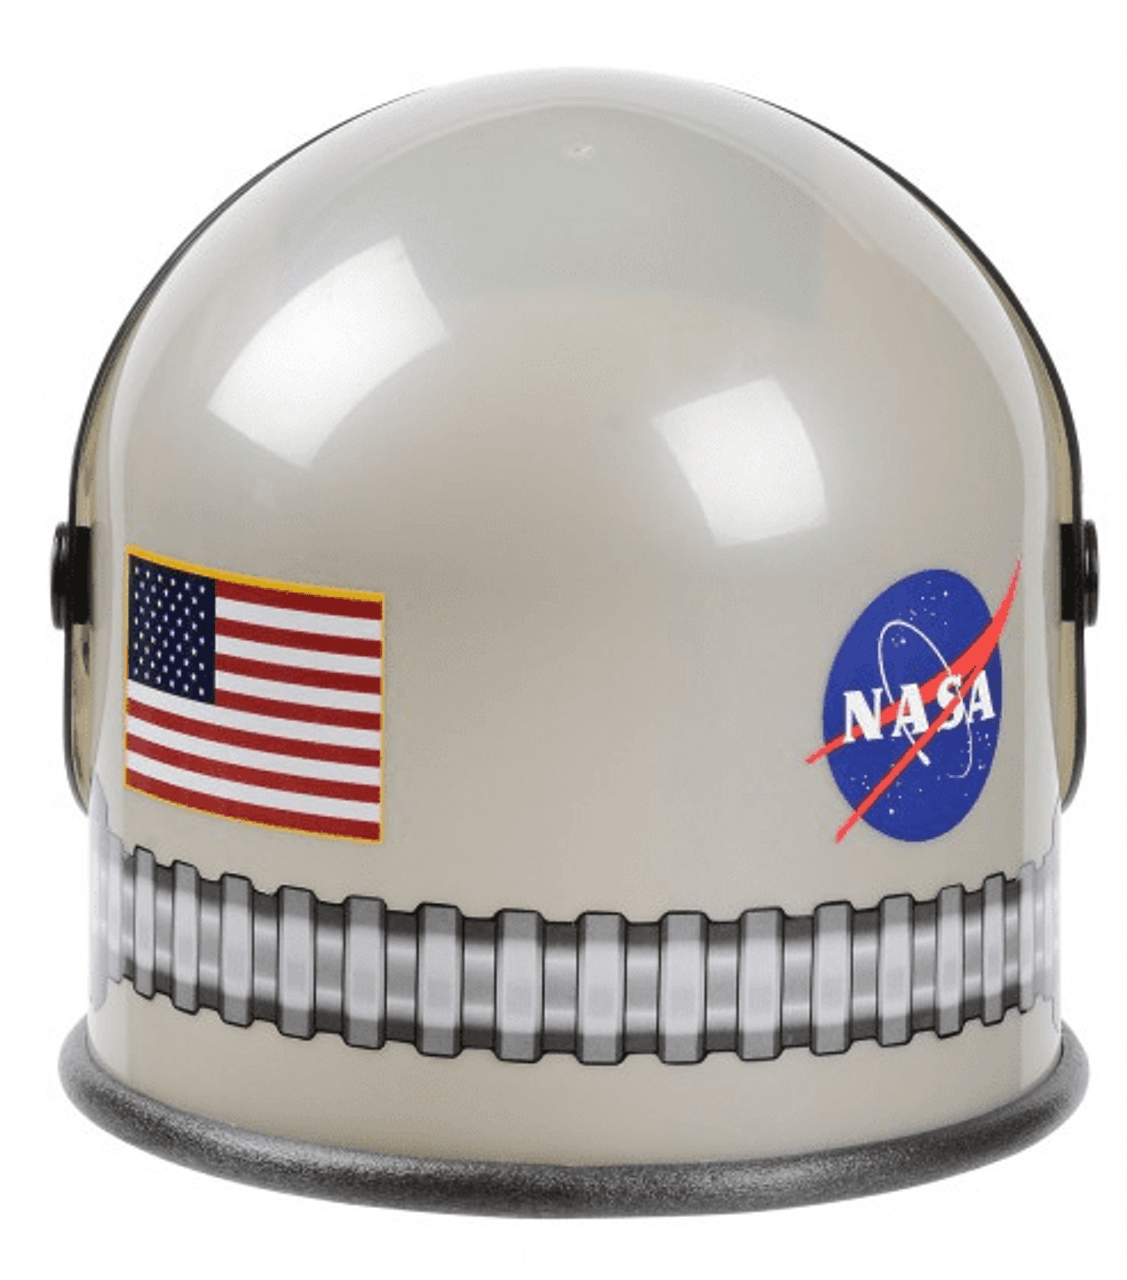 space helmet png